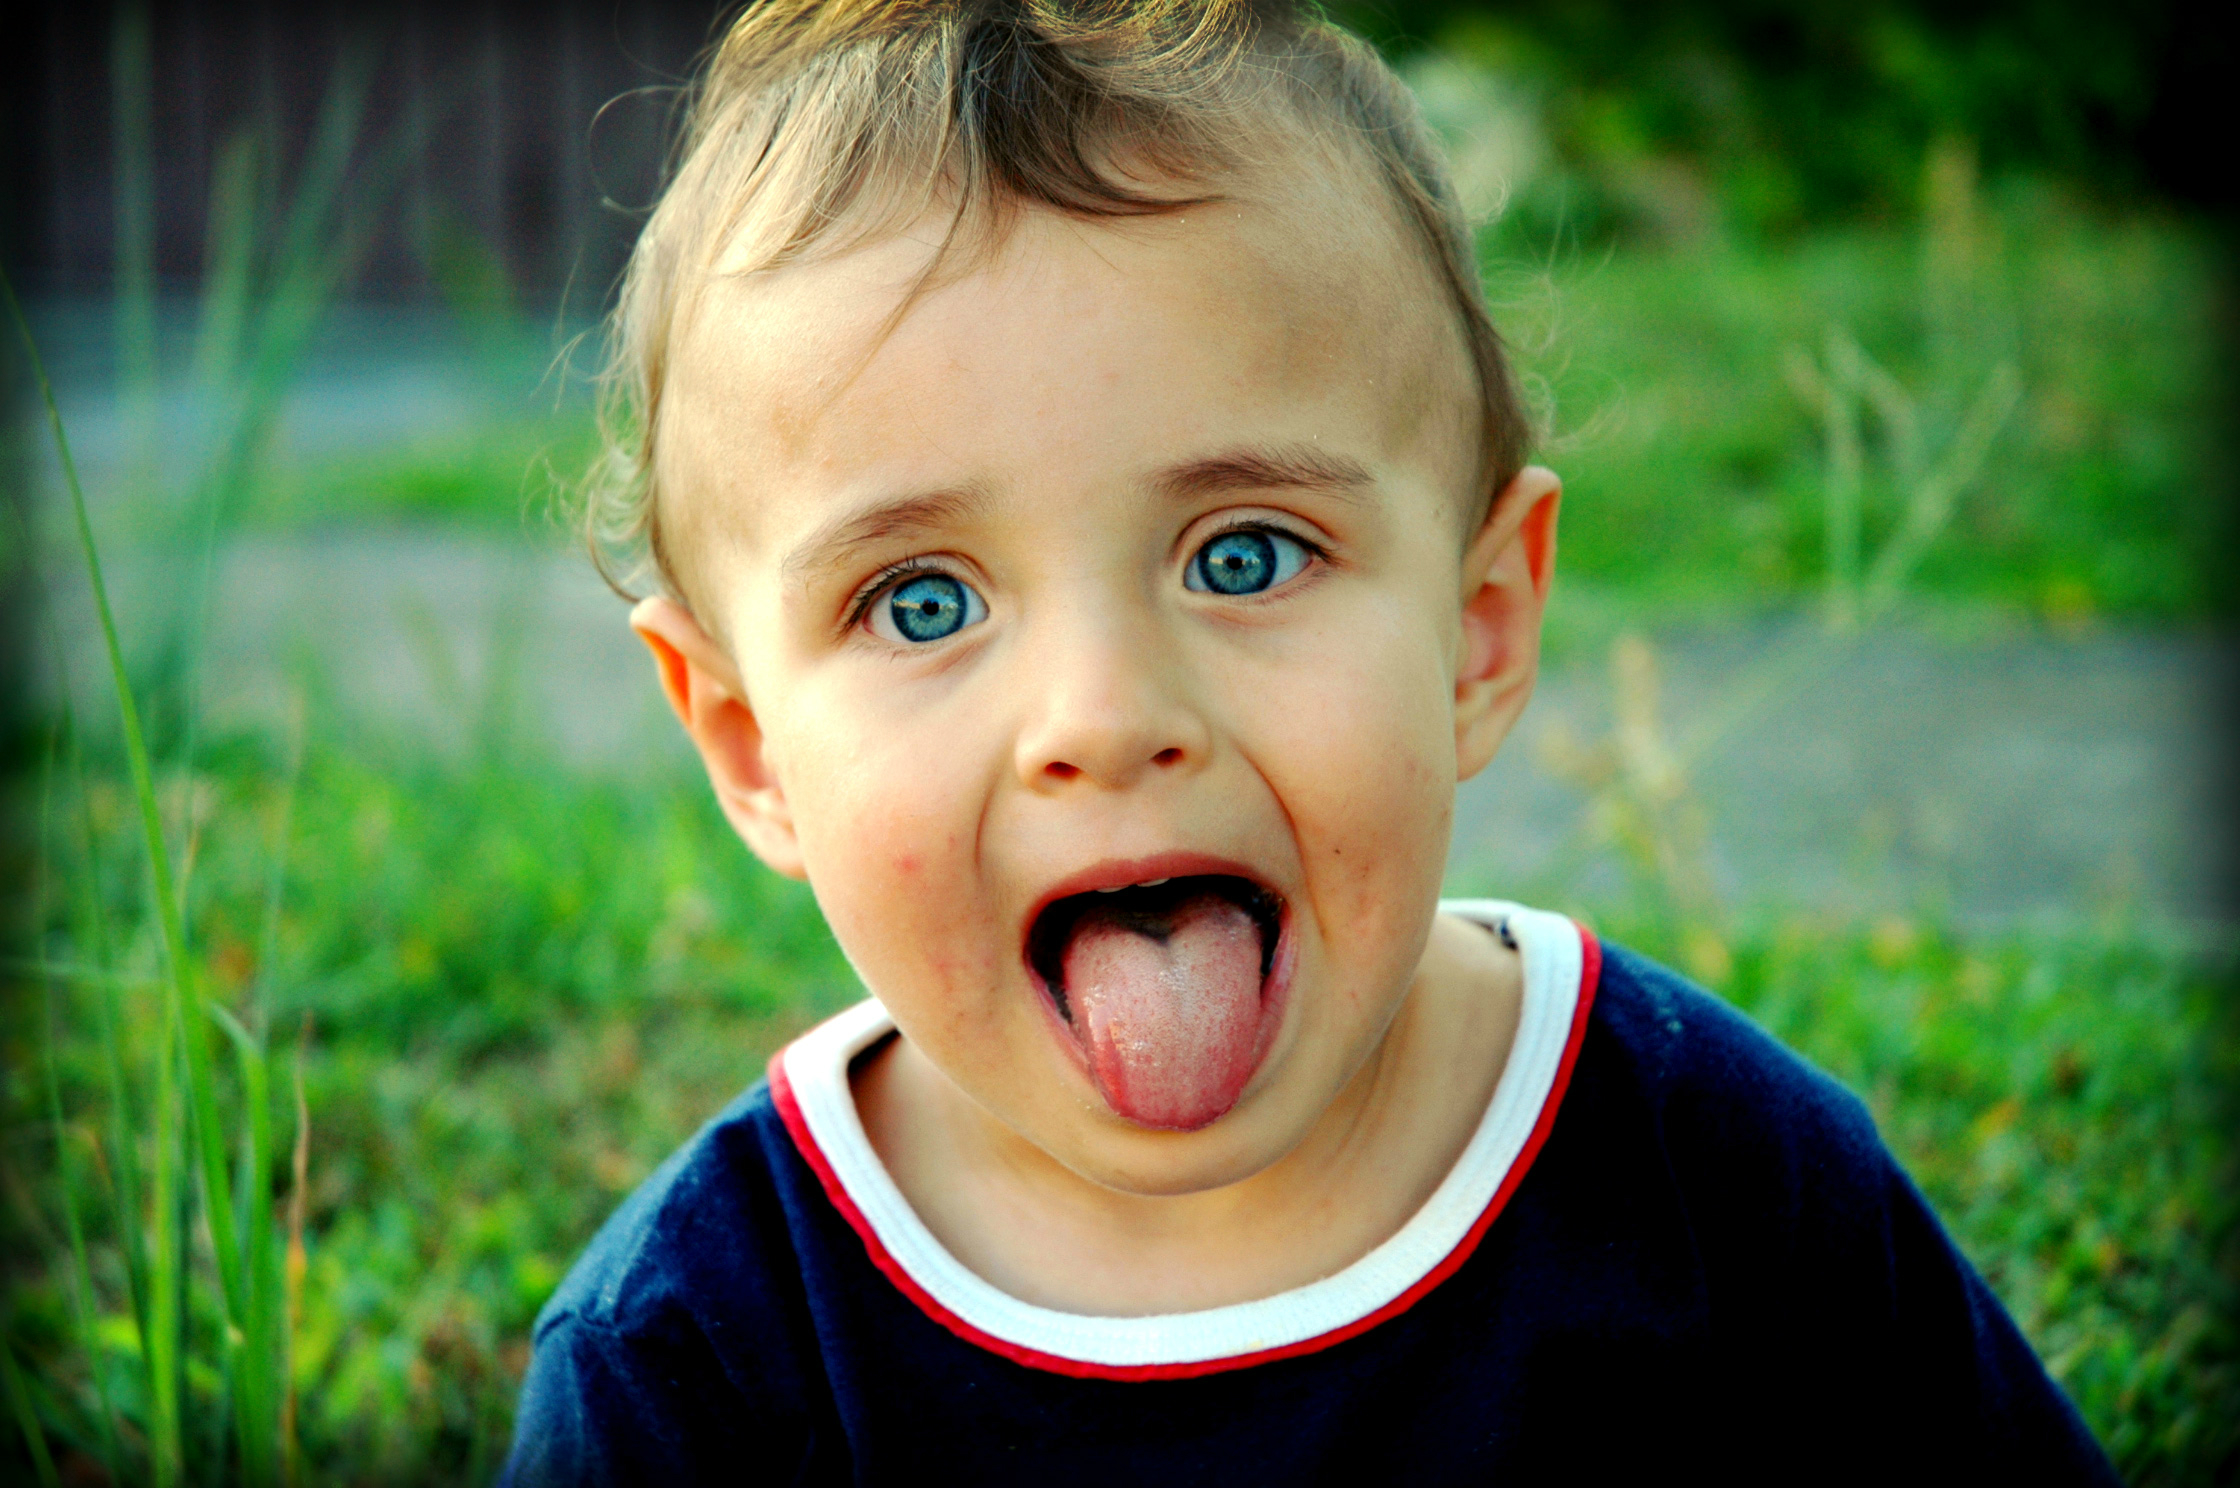 Язык высунутый изо рта. Высунутый язык. Ребенок показывает язык. Мальчик высунул язык.